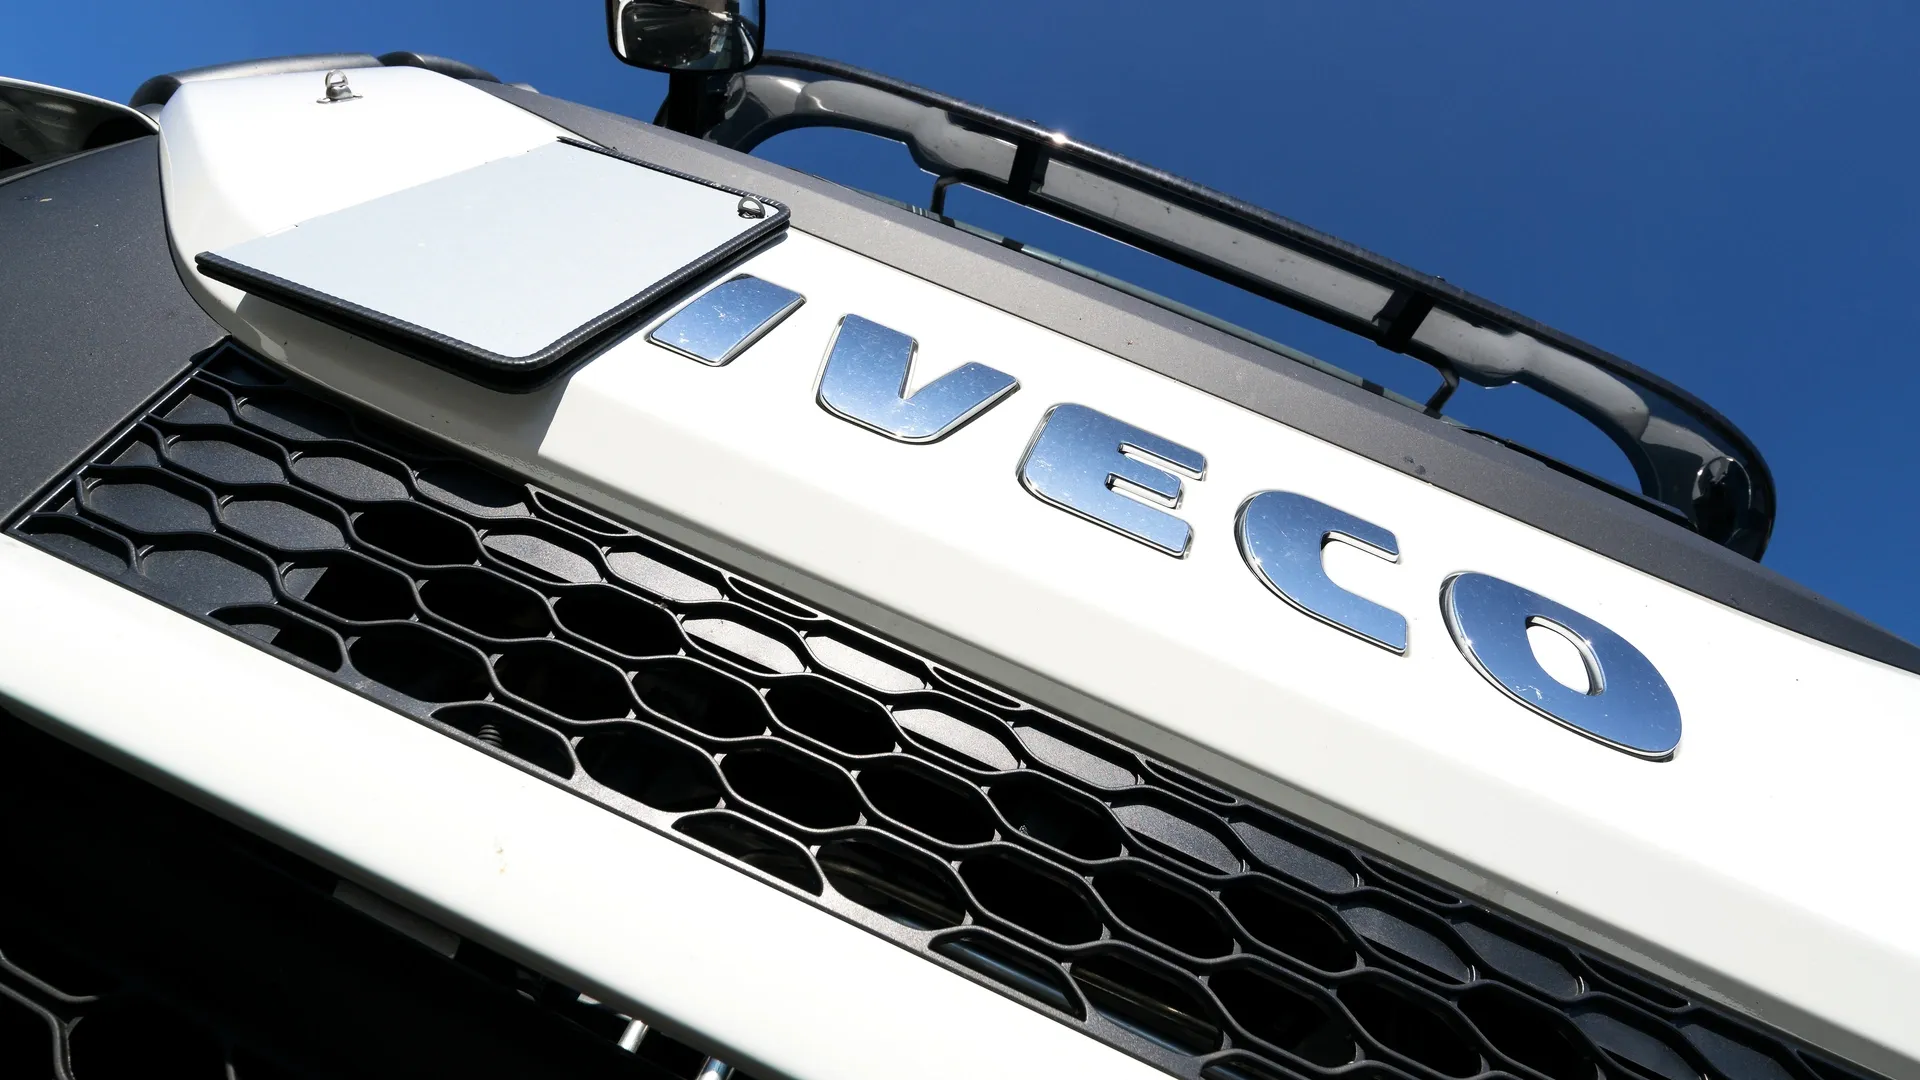 Машины на российском заводе Iveco продолжат выпускать в прежнем режиме. Фото: Bjoern Wylezich / Shutterstock.com